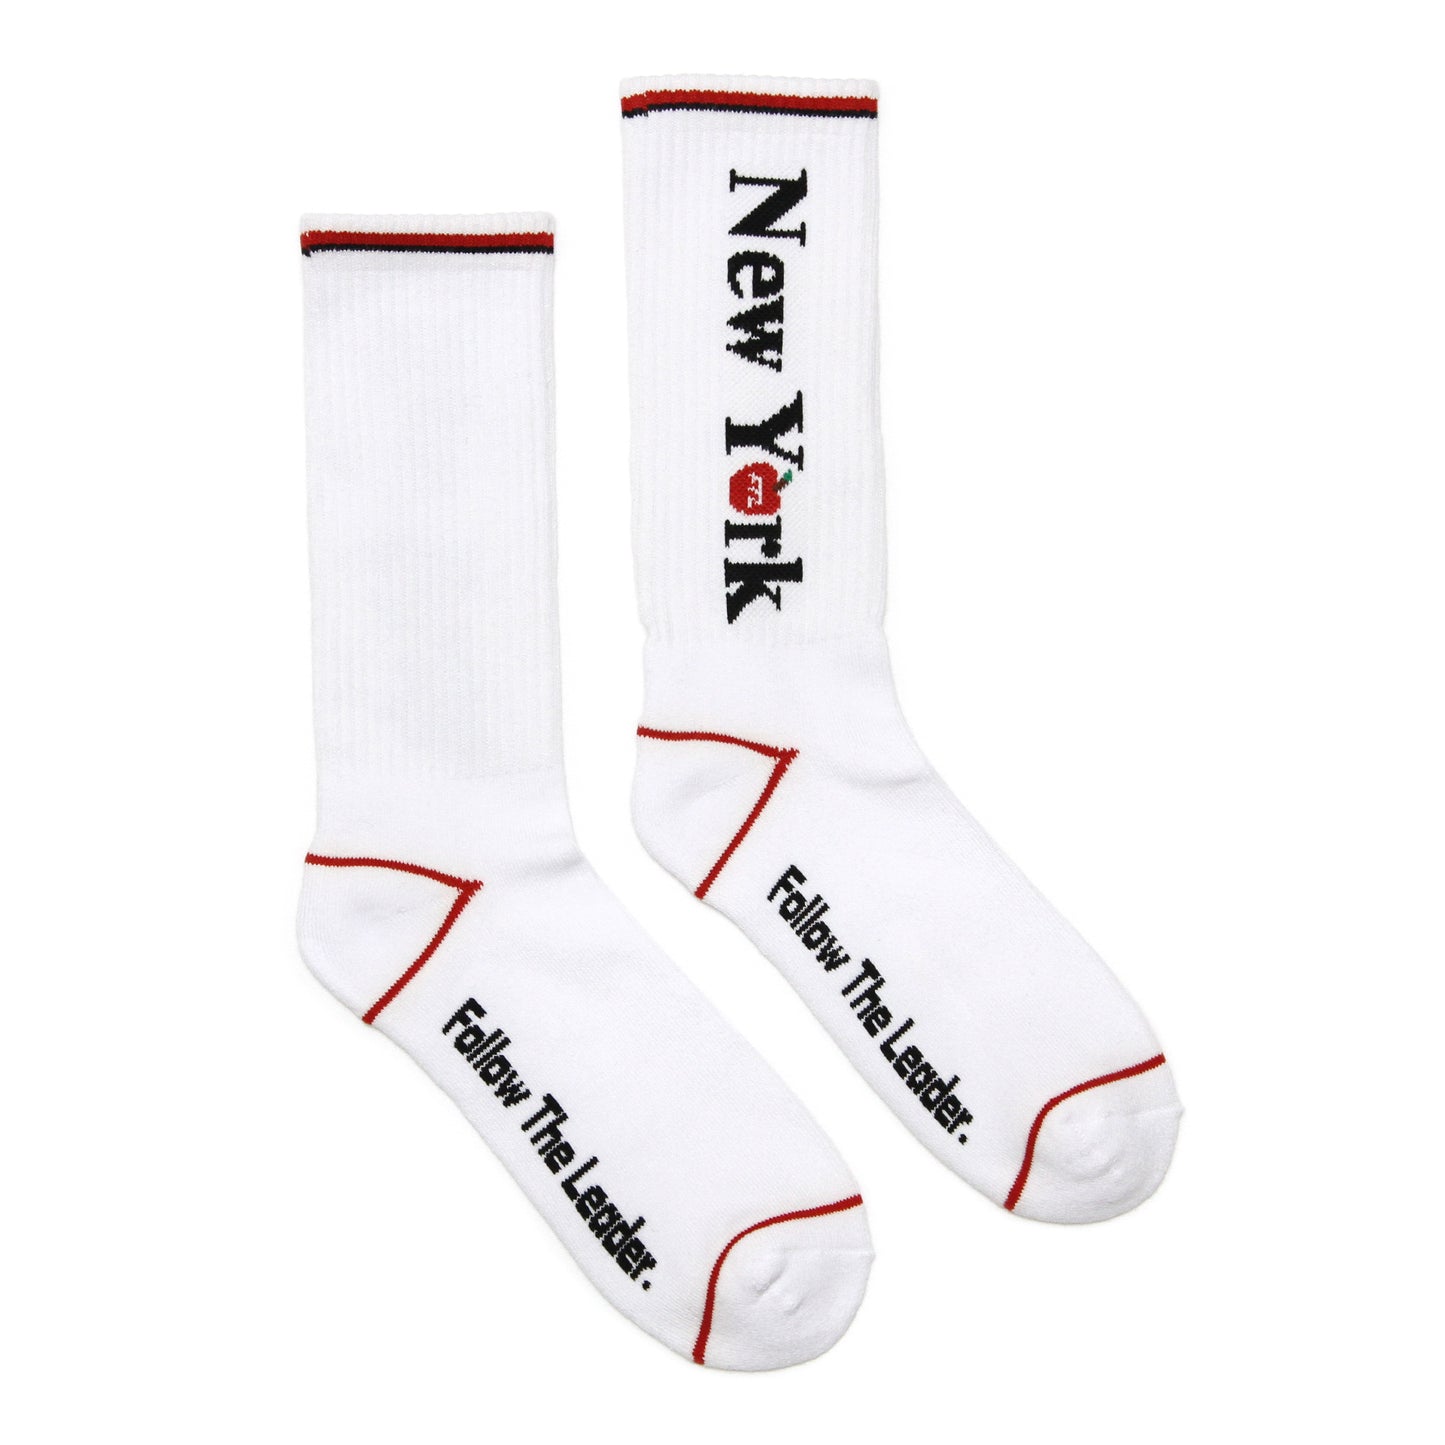 FTL - New York Socks/White